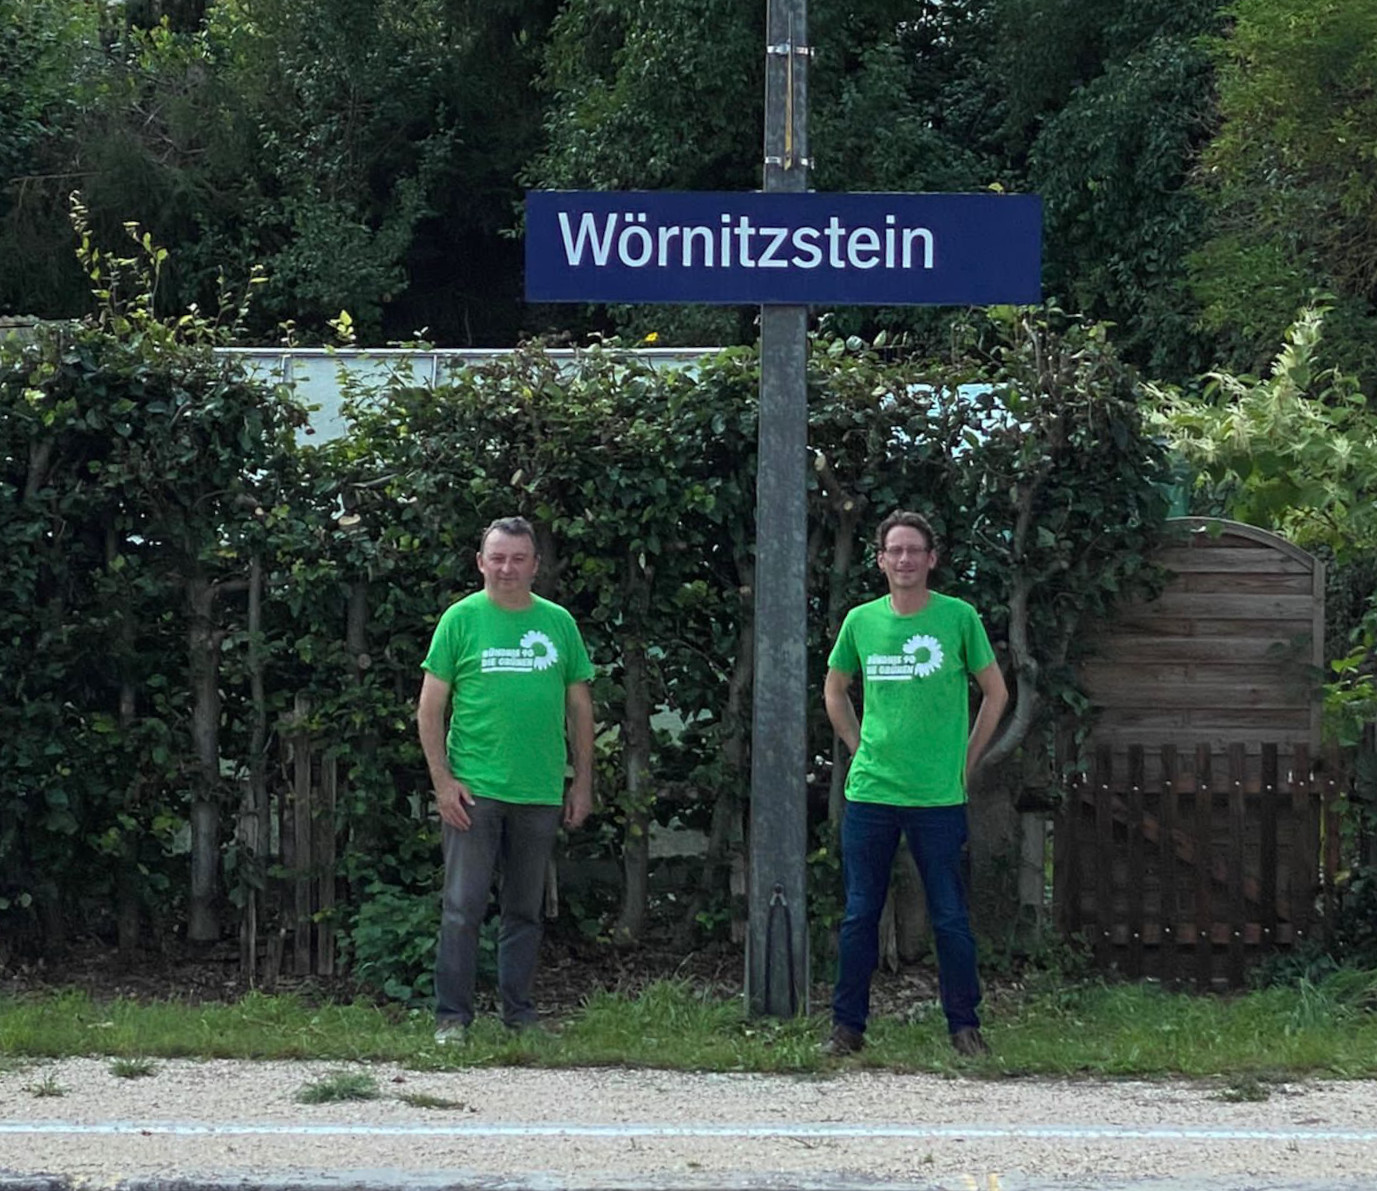 Gruenenkandidat_Norder_fuer_Erhalt_von_Bahnhof_Woernitzstein_btw21